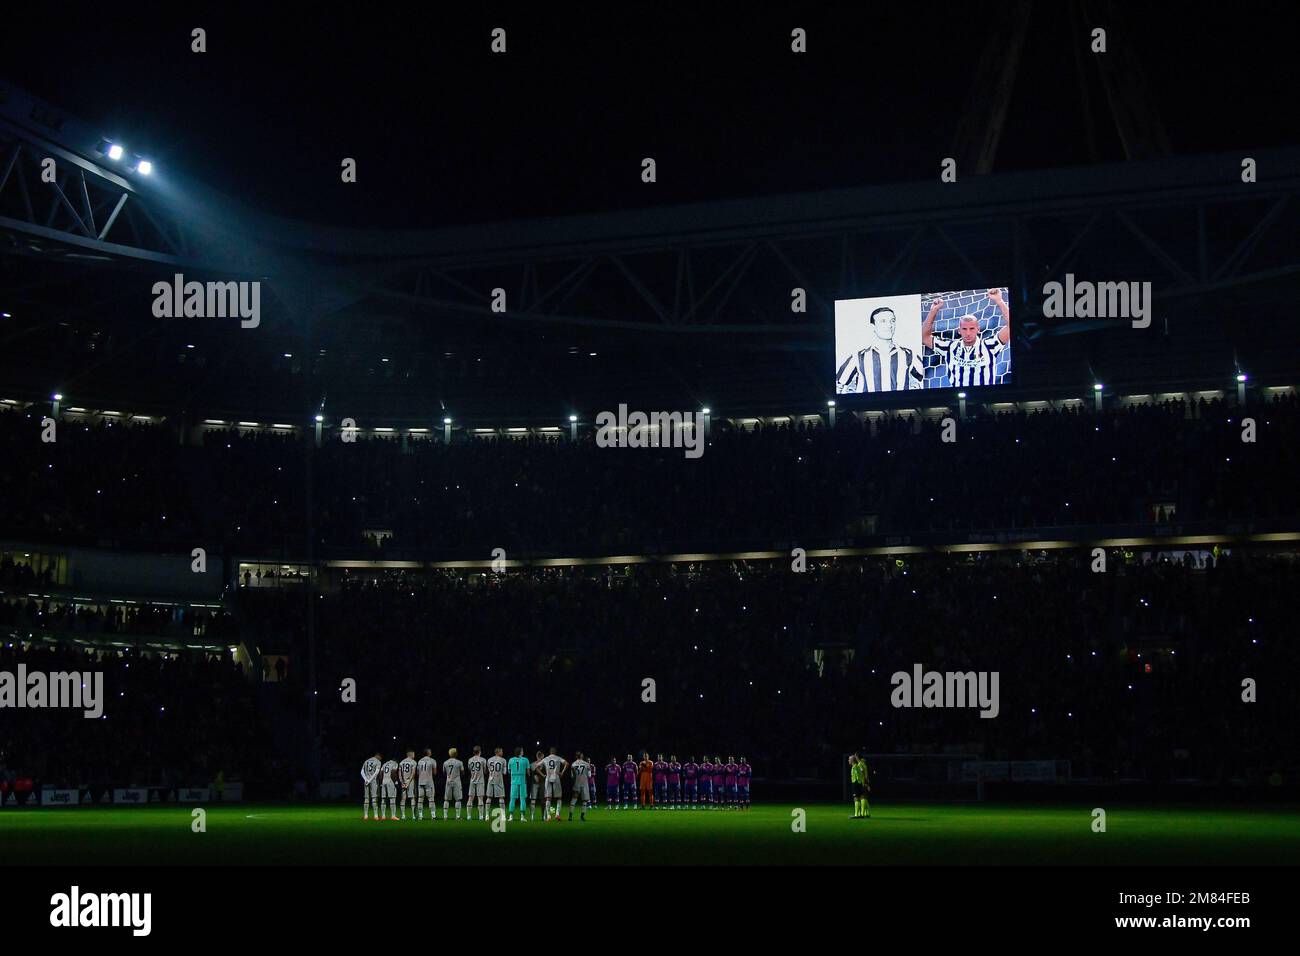 Une image des anciens Crémonais, Juventus, Sampdoria, Chelsea et l'Italie Gianluca Vialli est projecterd sur l'écran du stade comme une minute de silence est lui Banque D'Images